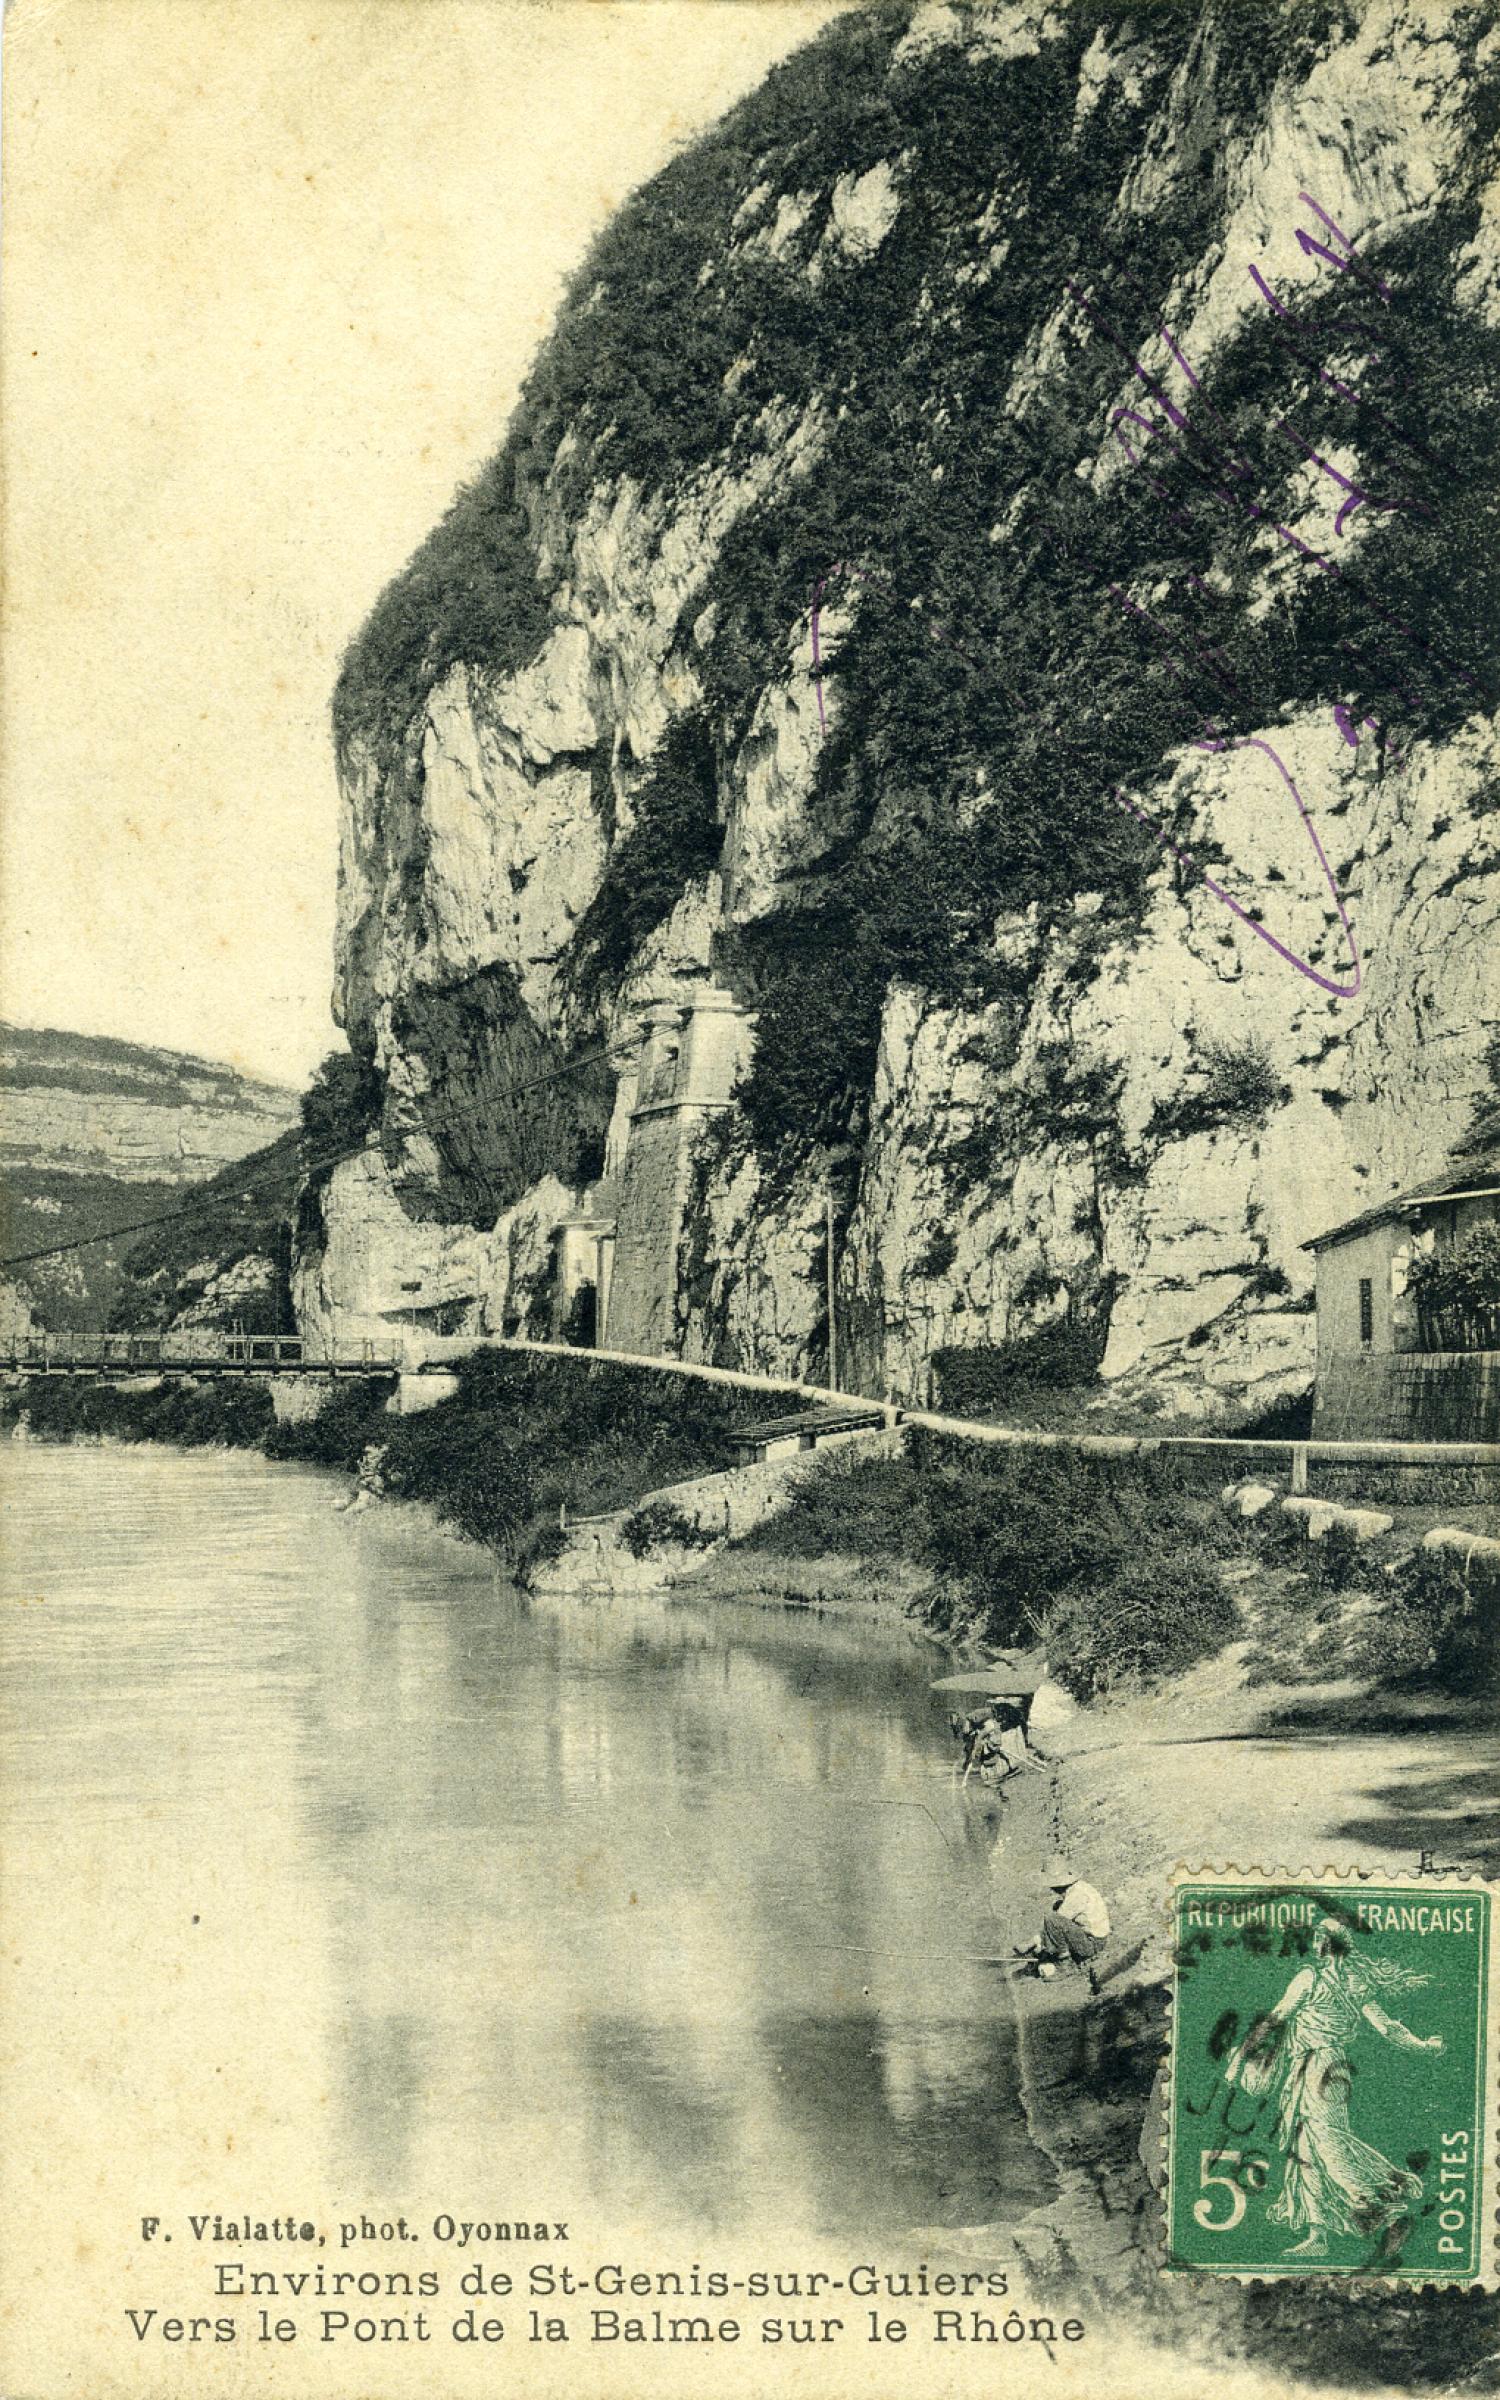 Environs de St-Genis-sur-Guiers Rhône vers le Pont de la Balme sur le Rhône.